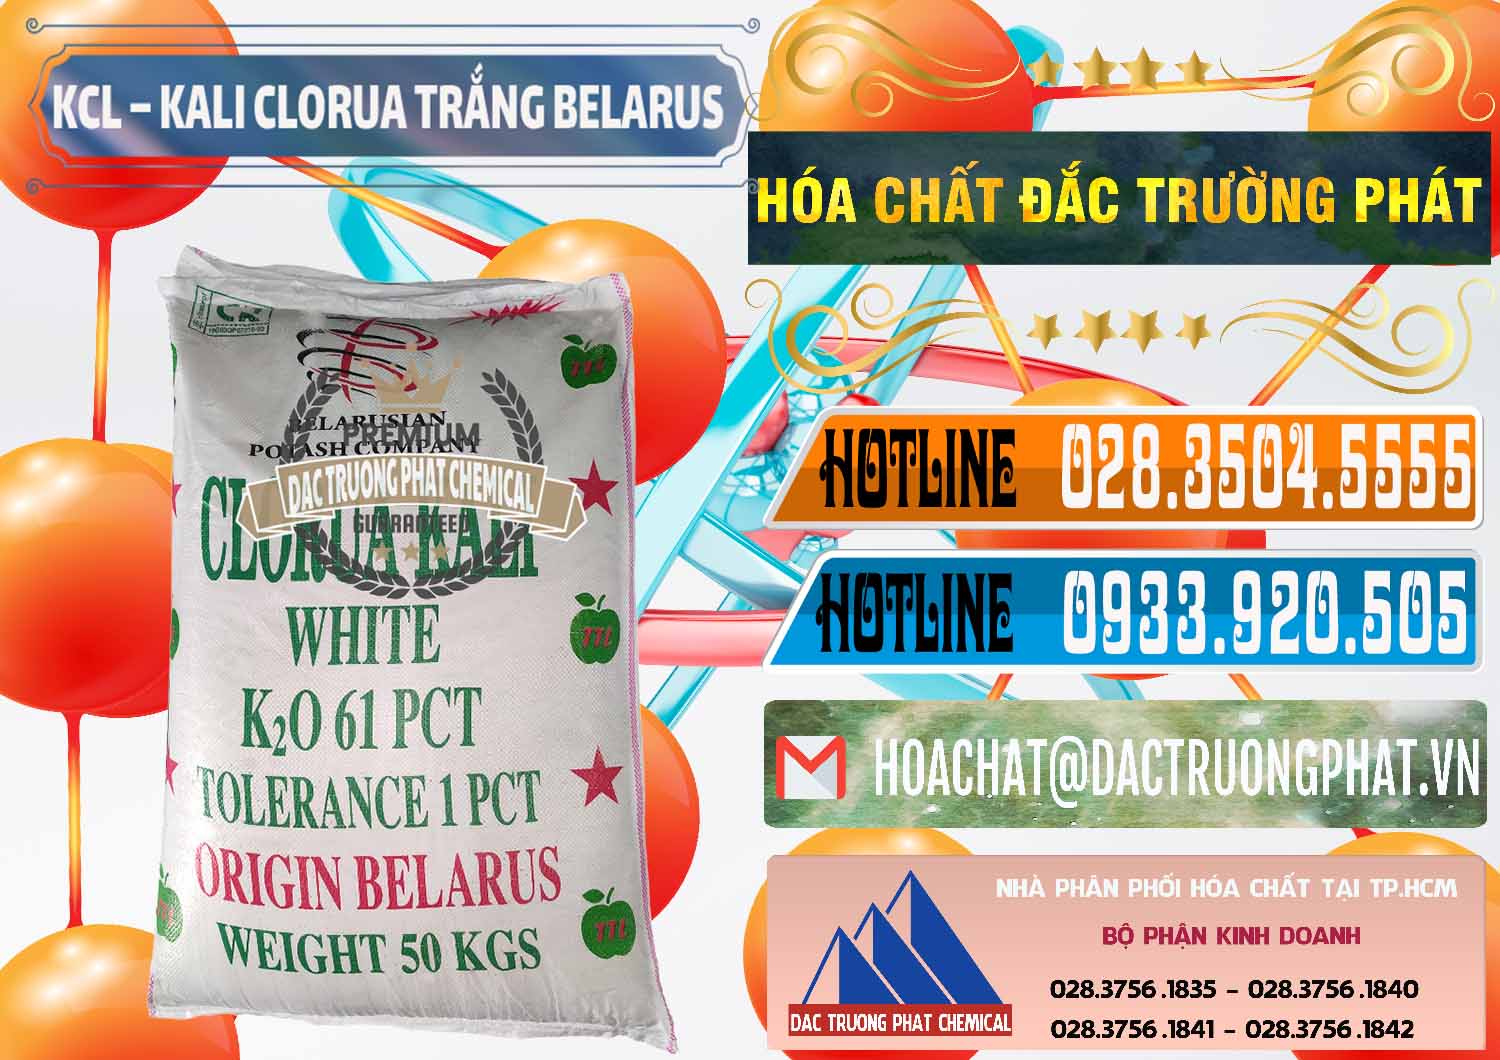 Nơi chuyên phân phối và bán KCL – Kali Clorua Trắng Belarus - 0085 - Nhập khẩu và cung cấp hóa chất tại TP.HCM - stmp.net